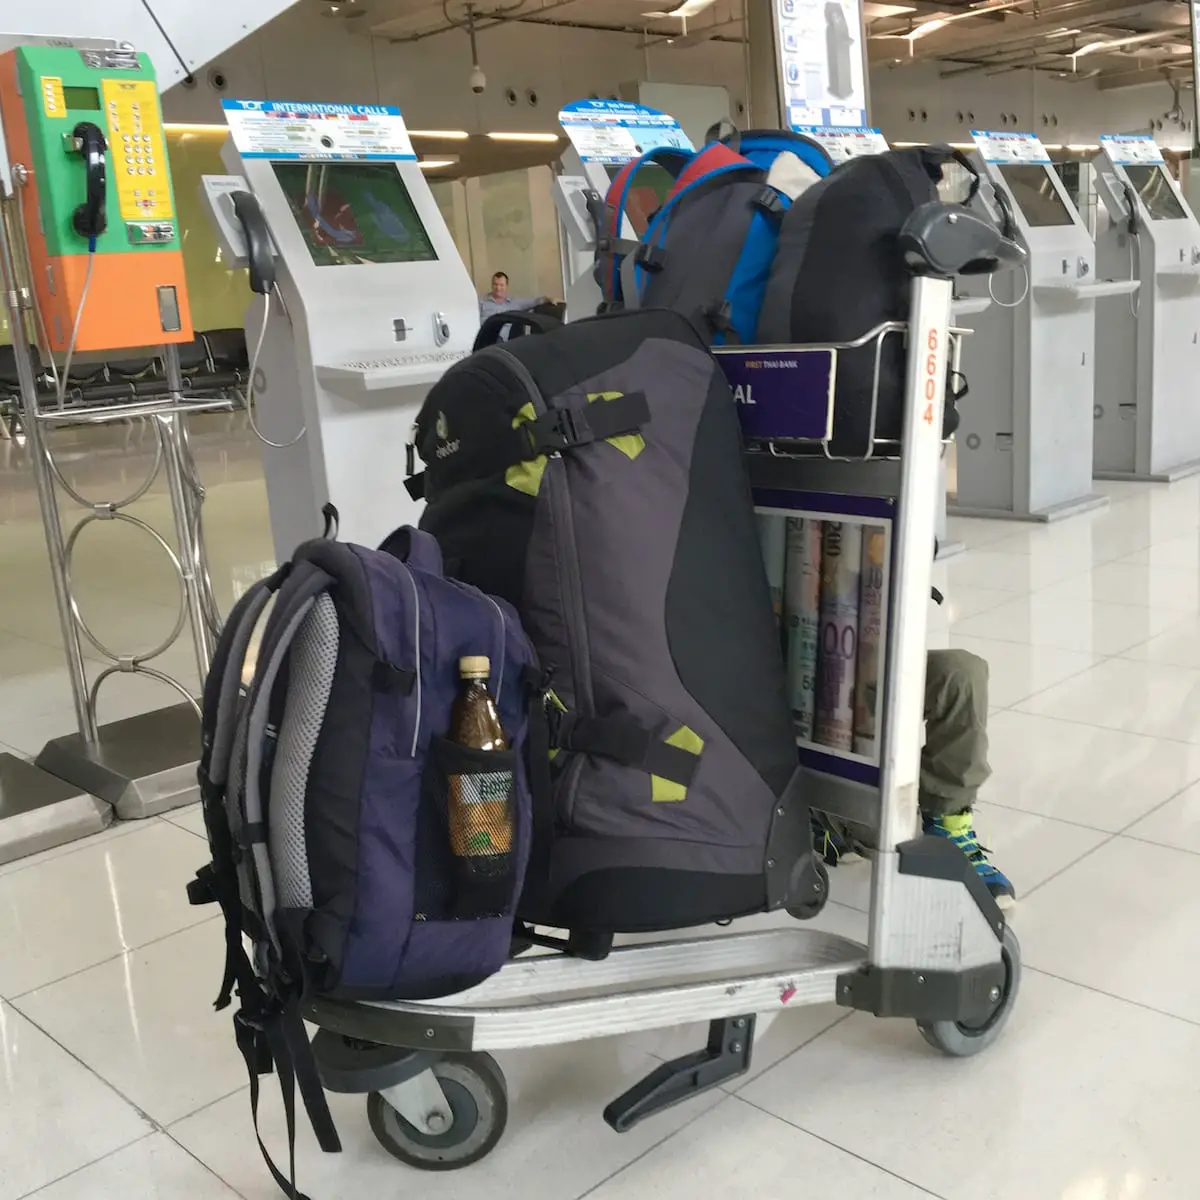 Rollkoffer, Rucksack, Kinderrucksack - Gepäckstücke für Reisen allein mit Kind und Baby